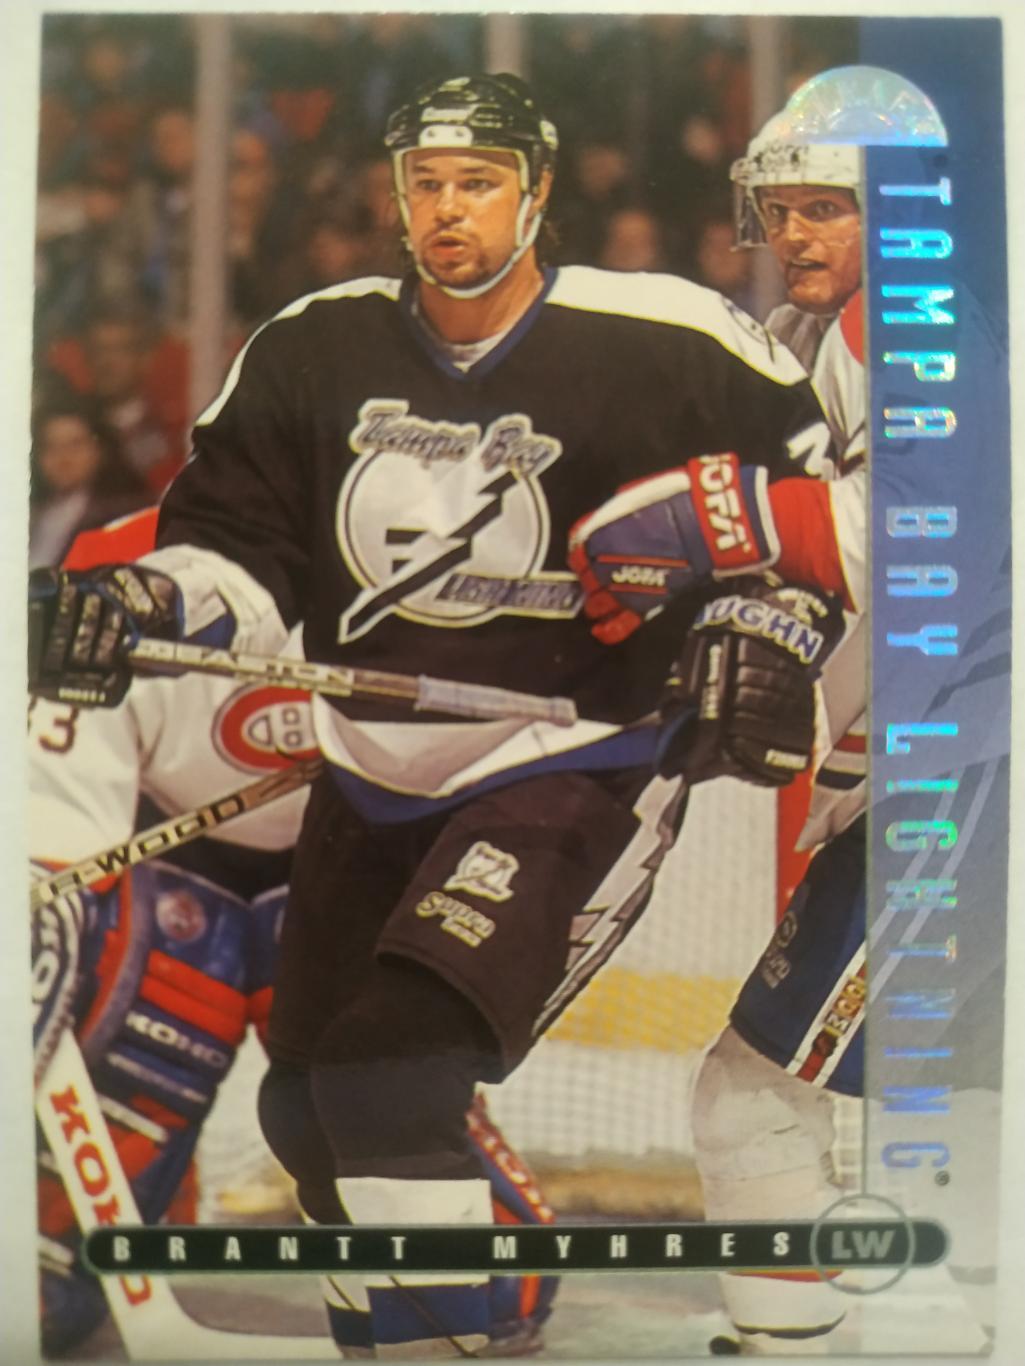 ХОККЕЙ КАРТОЧКА НХЛ DONRUSS LEAF 1995-96 BRANTT MYHRES TAMPA BAY LIGHNTING #75